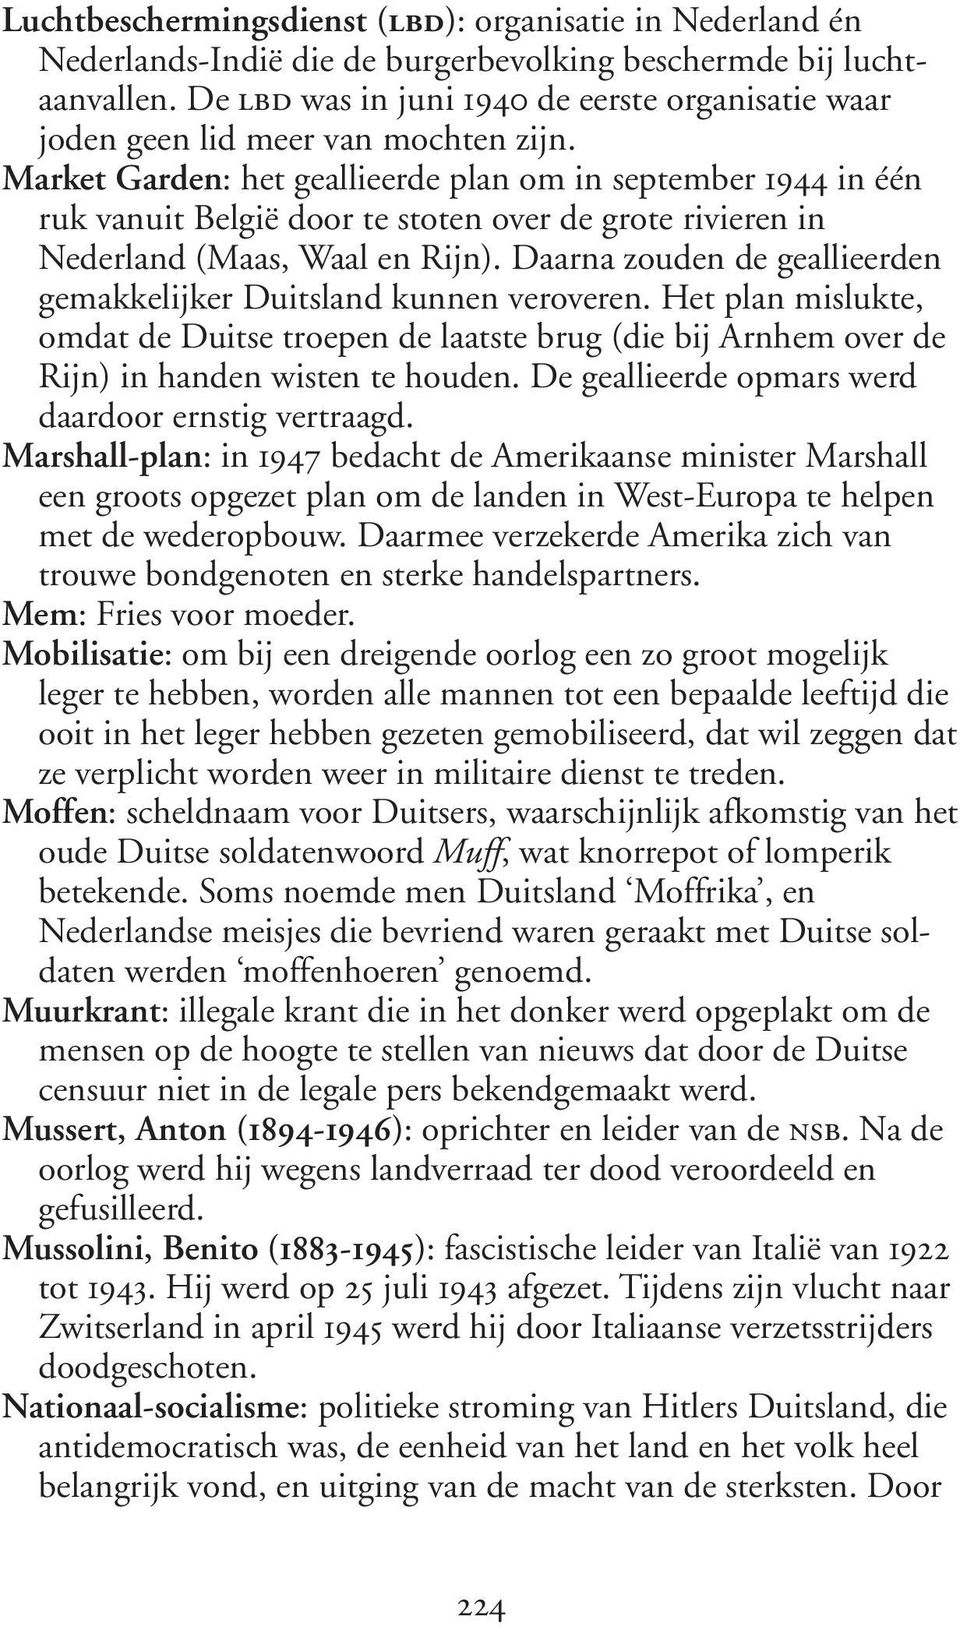 Market Garden: het geallieerde plan om in september 1944 in één ruk vanuit België door te stoten over de grote rivieren in Nederland (Maas, Waal en Rijn).